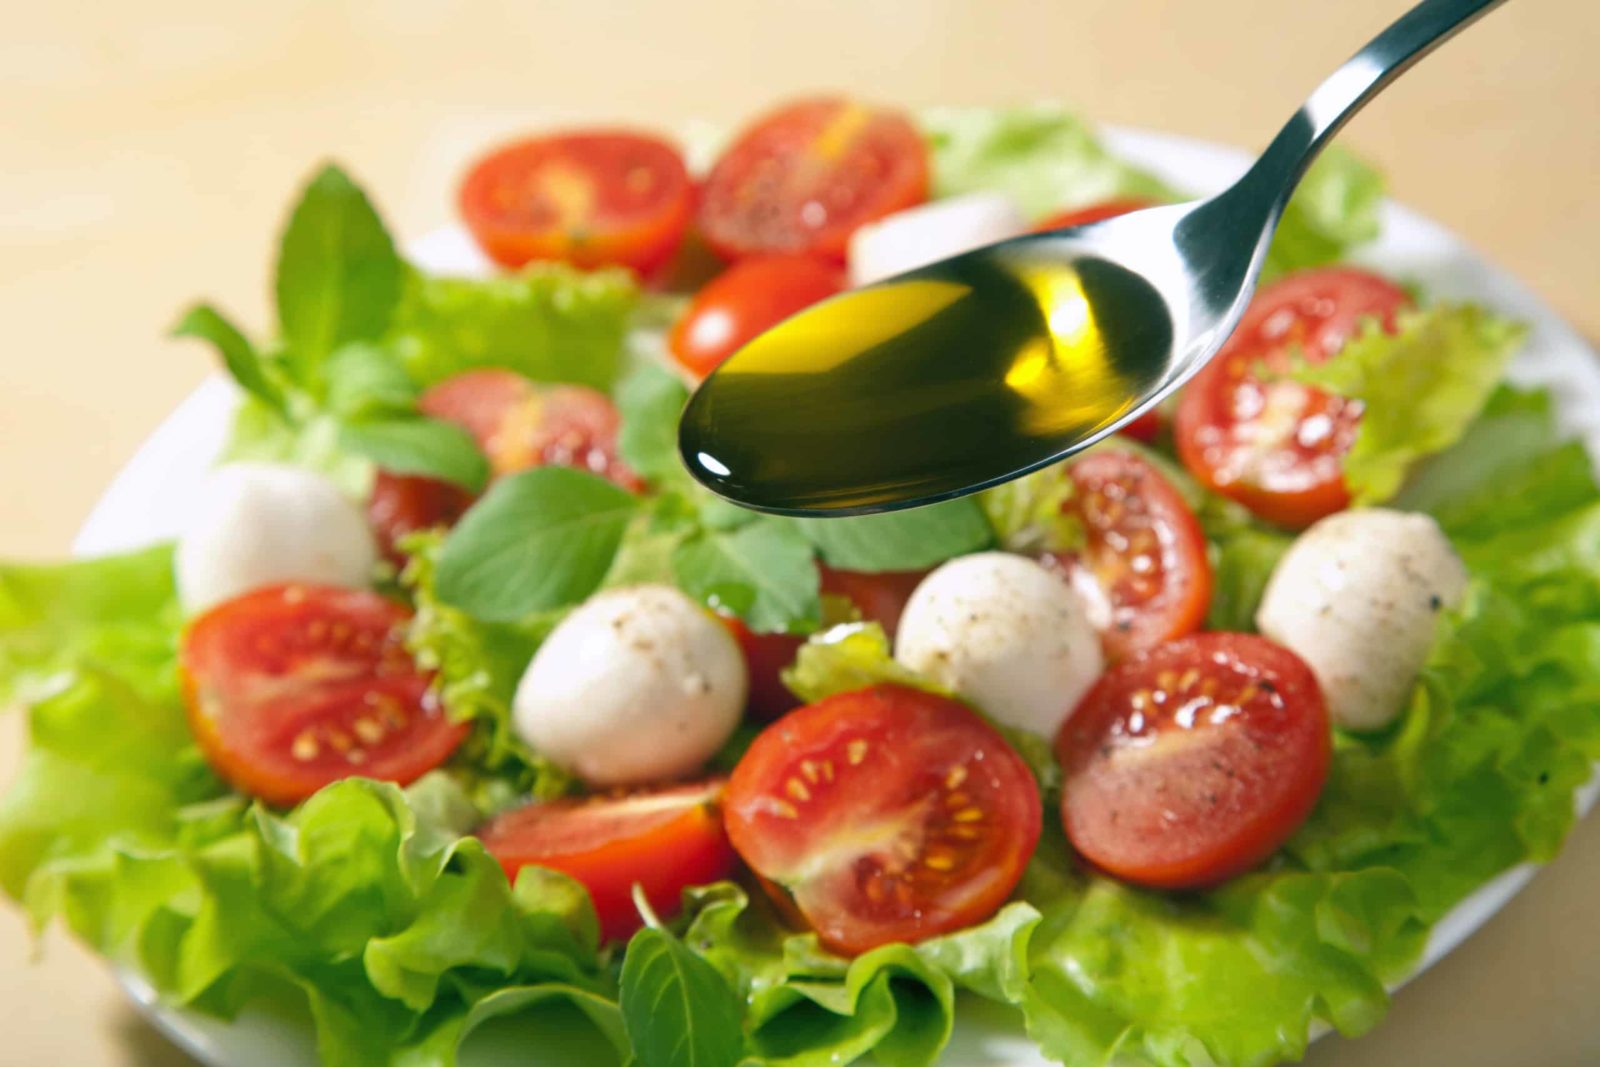 Les meilleurs huiles d'olive